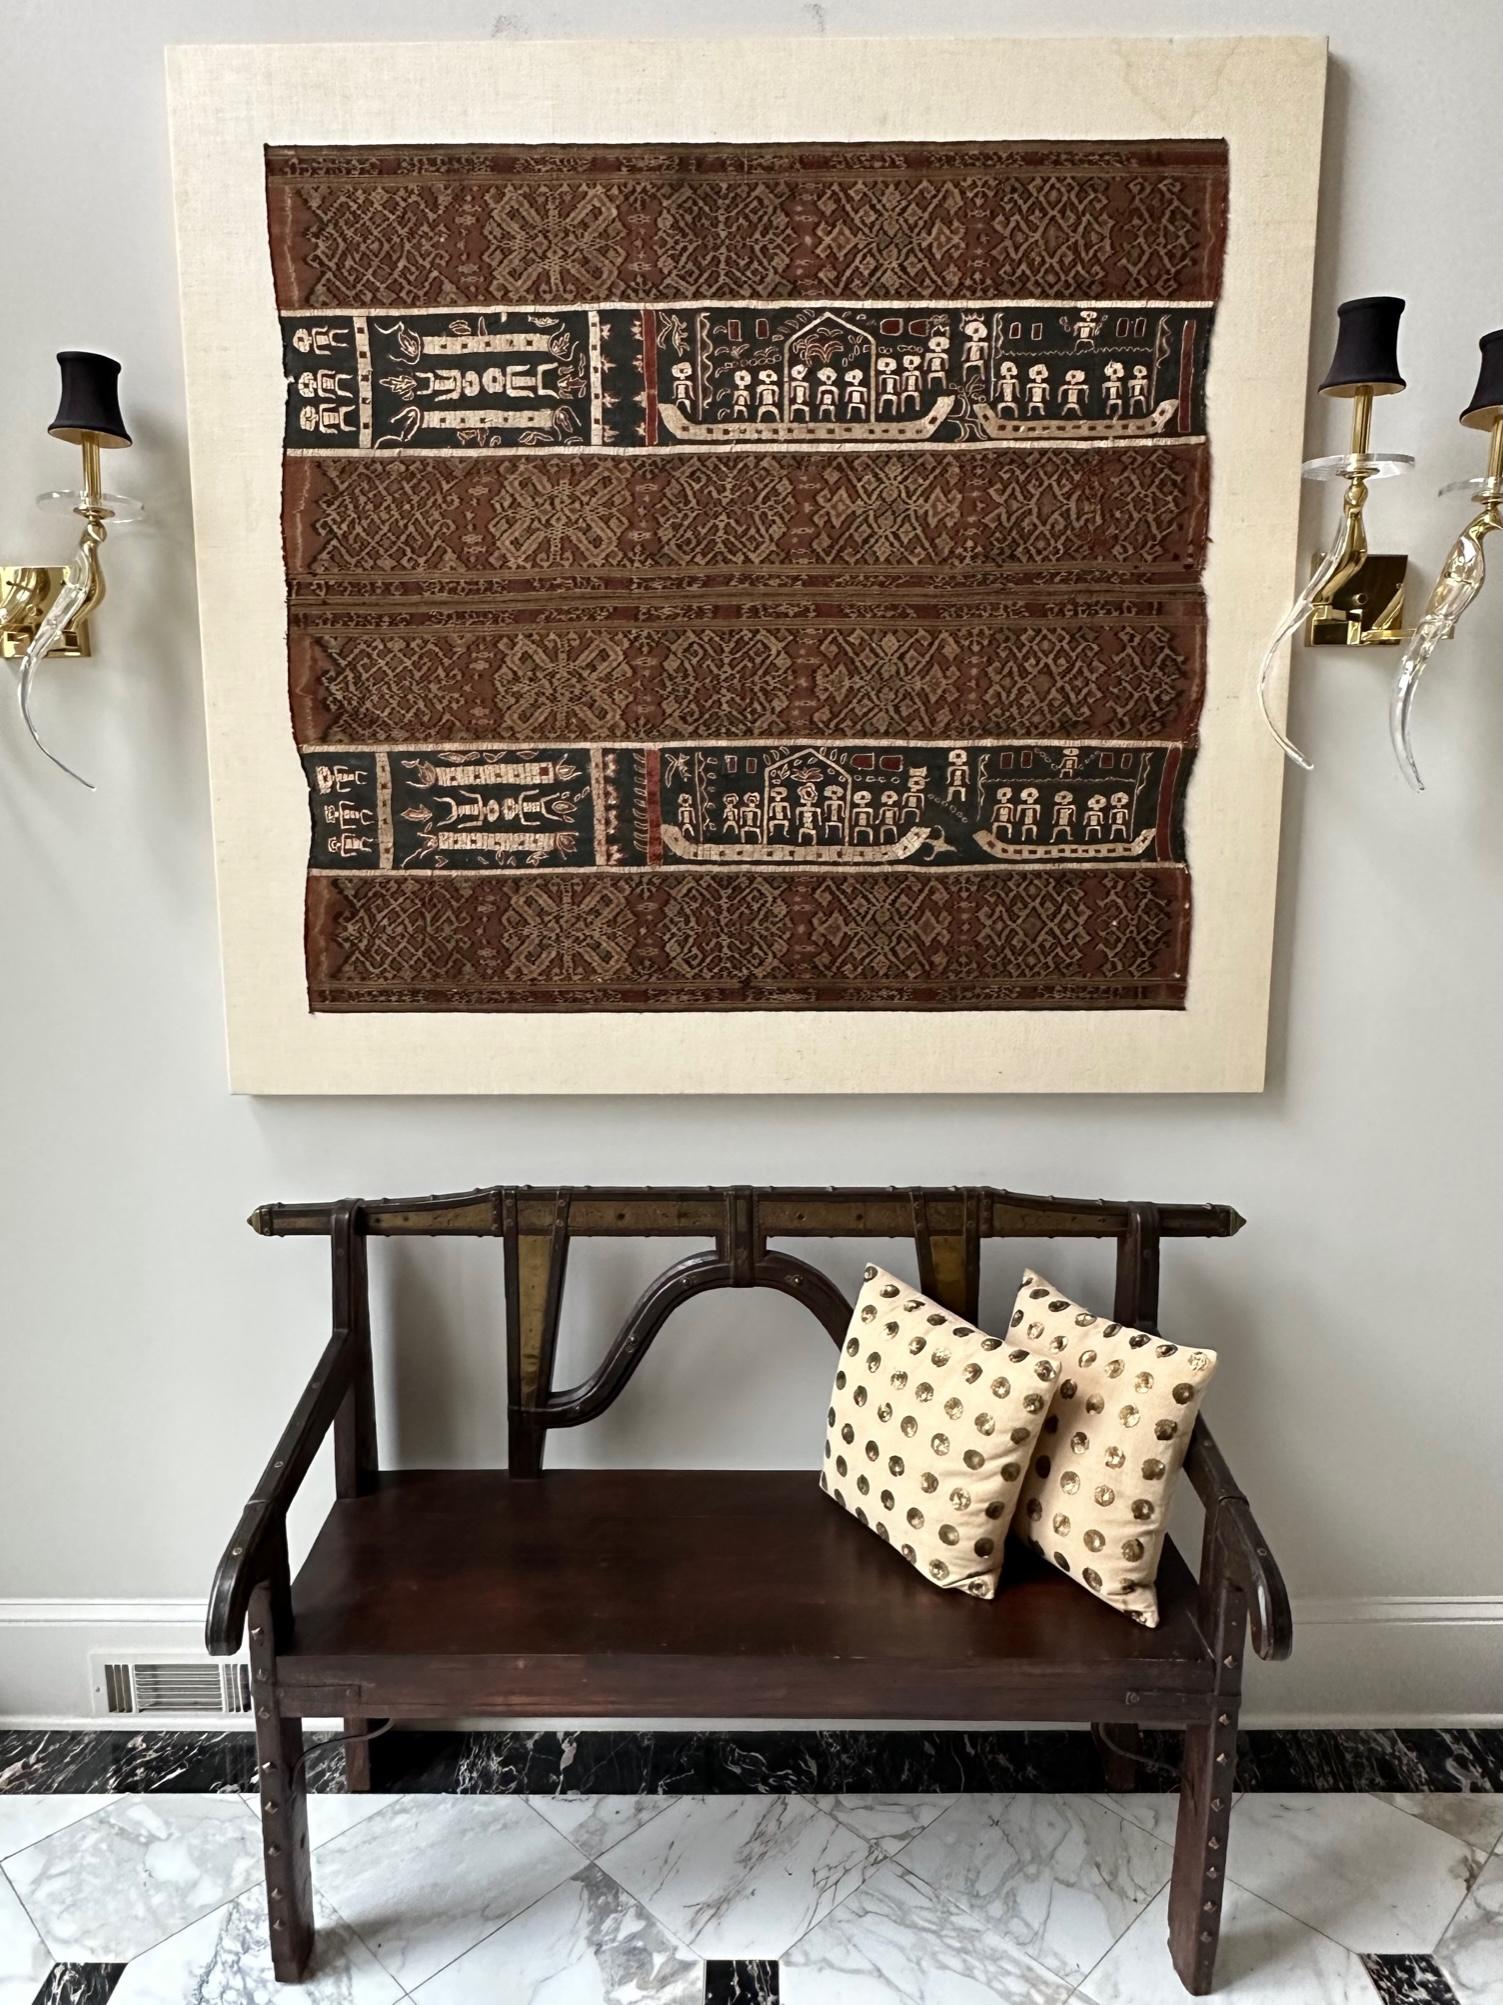  Un panneau textile indonésien présenté professionnellement sur une toile de lin. Sur demande, il peut être détaché de la toile pour un envoi facile et économique. Le textile a été associé à d'anciens panneaux d'ikat tissés et à des panneaux de